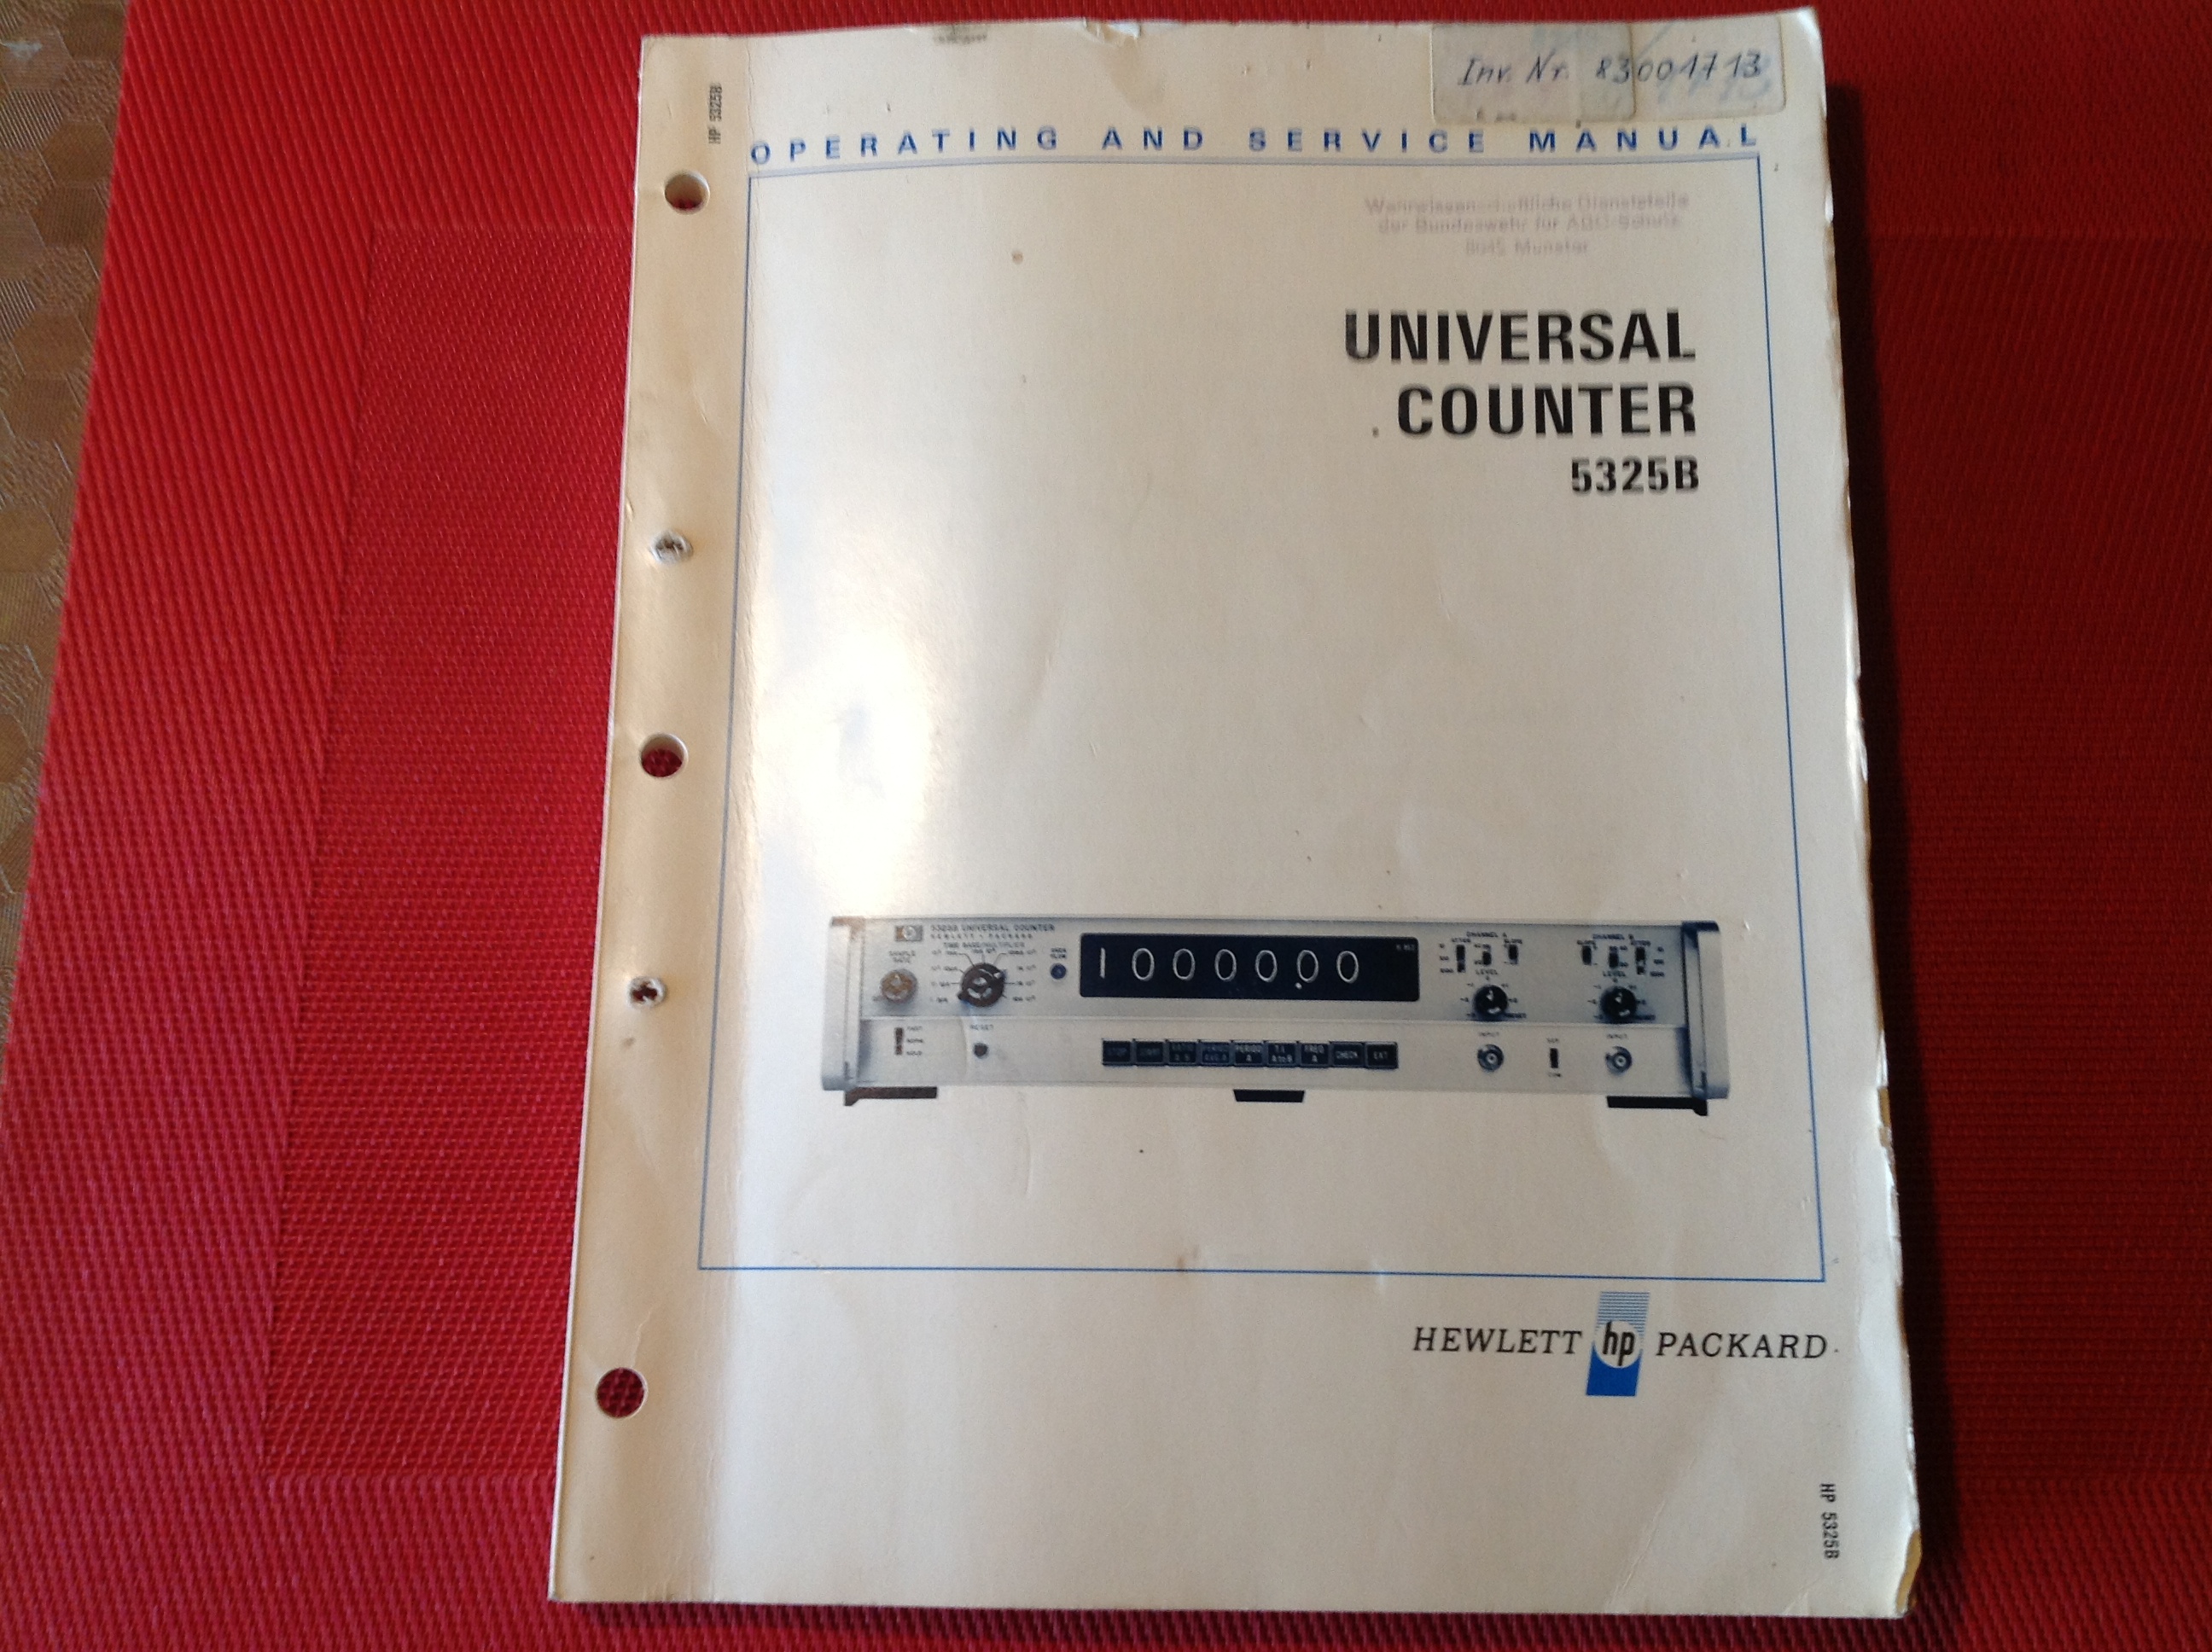 Hewlett Packard Universal Counter 5325B